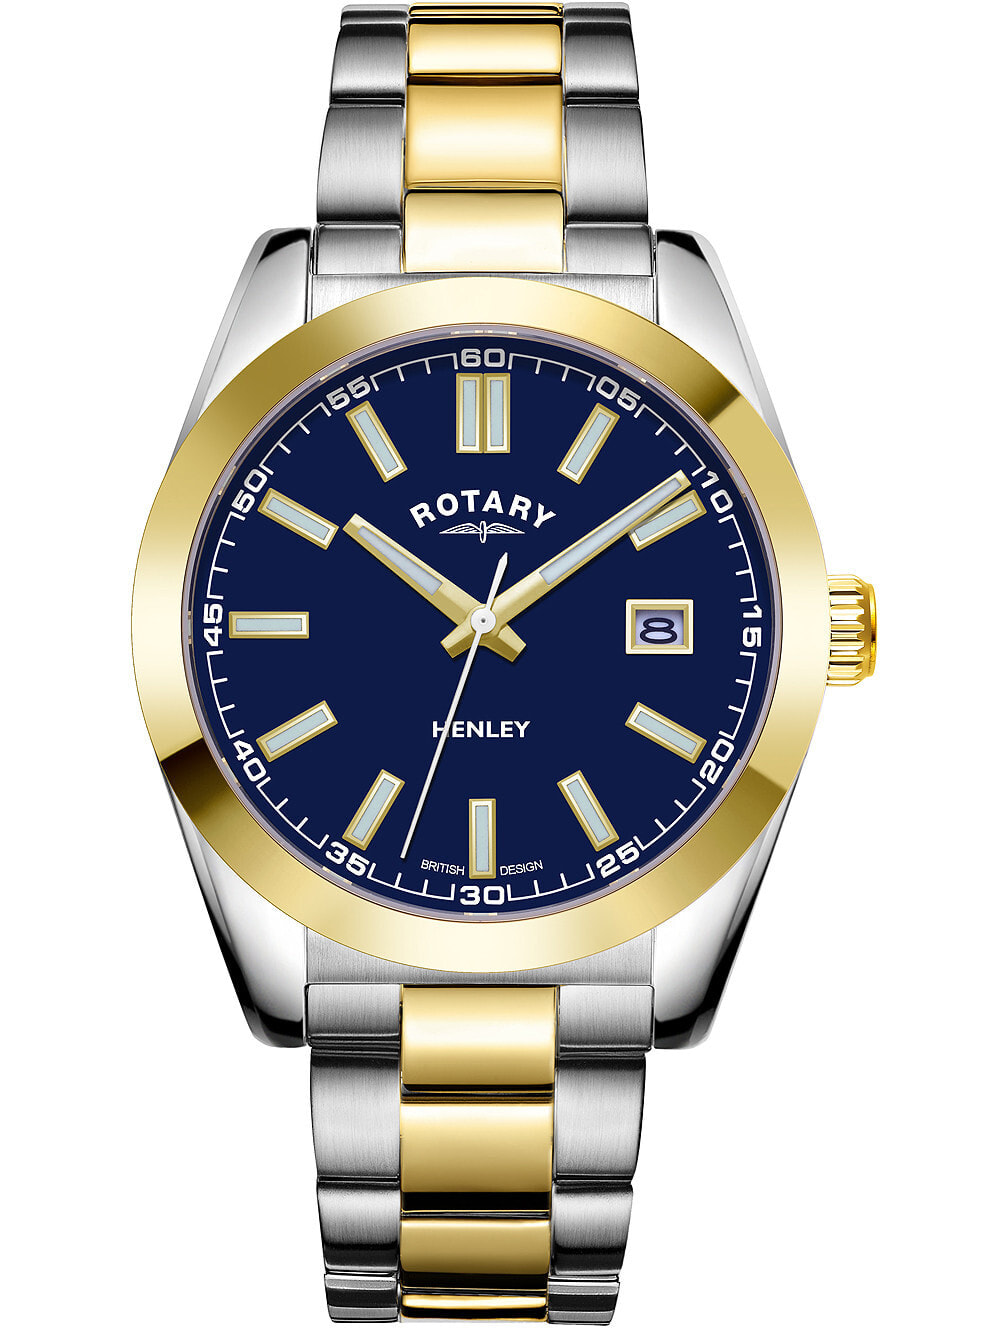 Мужские наручные часы с серебряным браслетом Rotary GB05181/05 Henley mens 40mm 10ATM